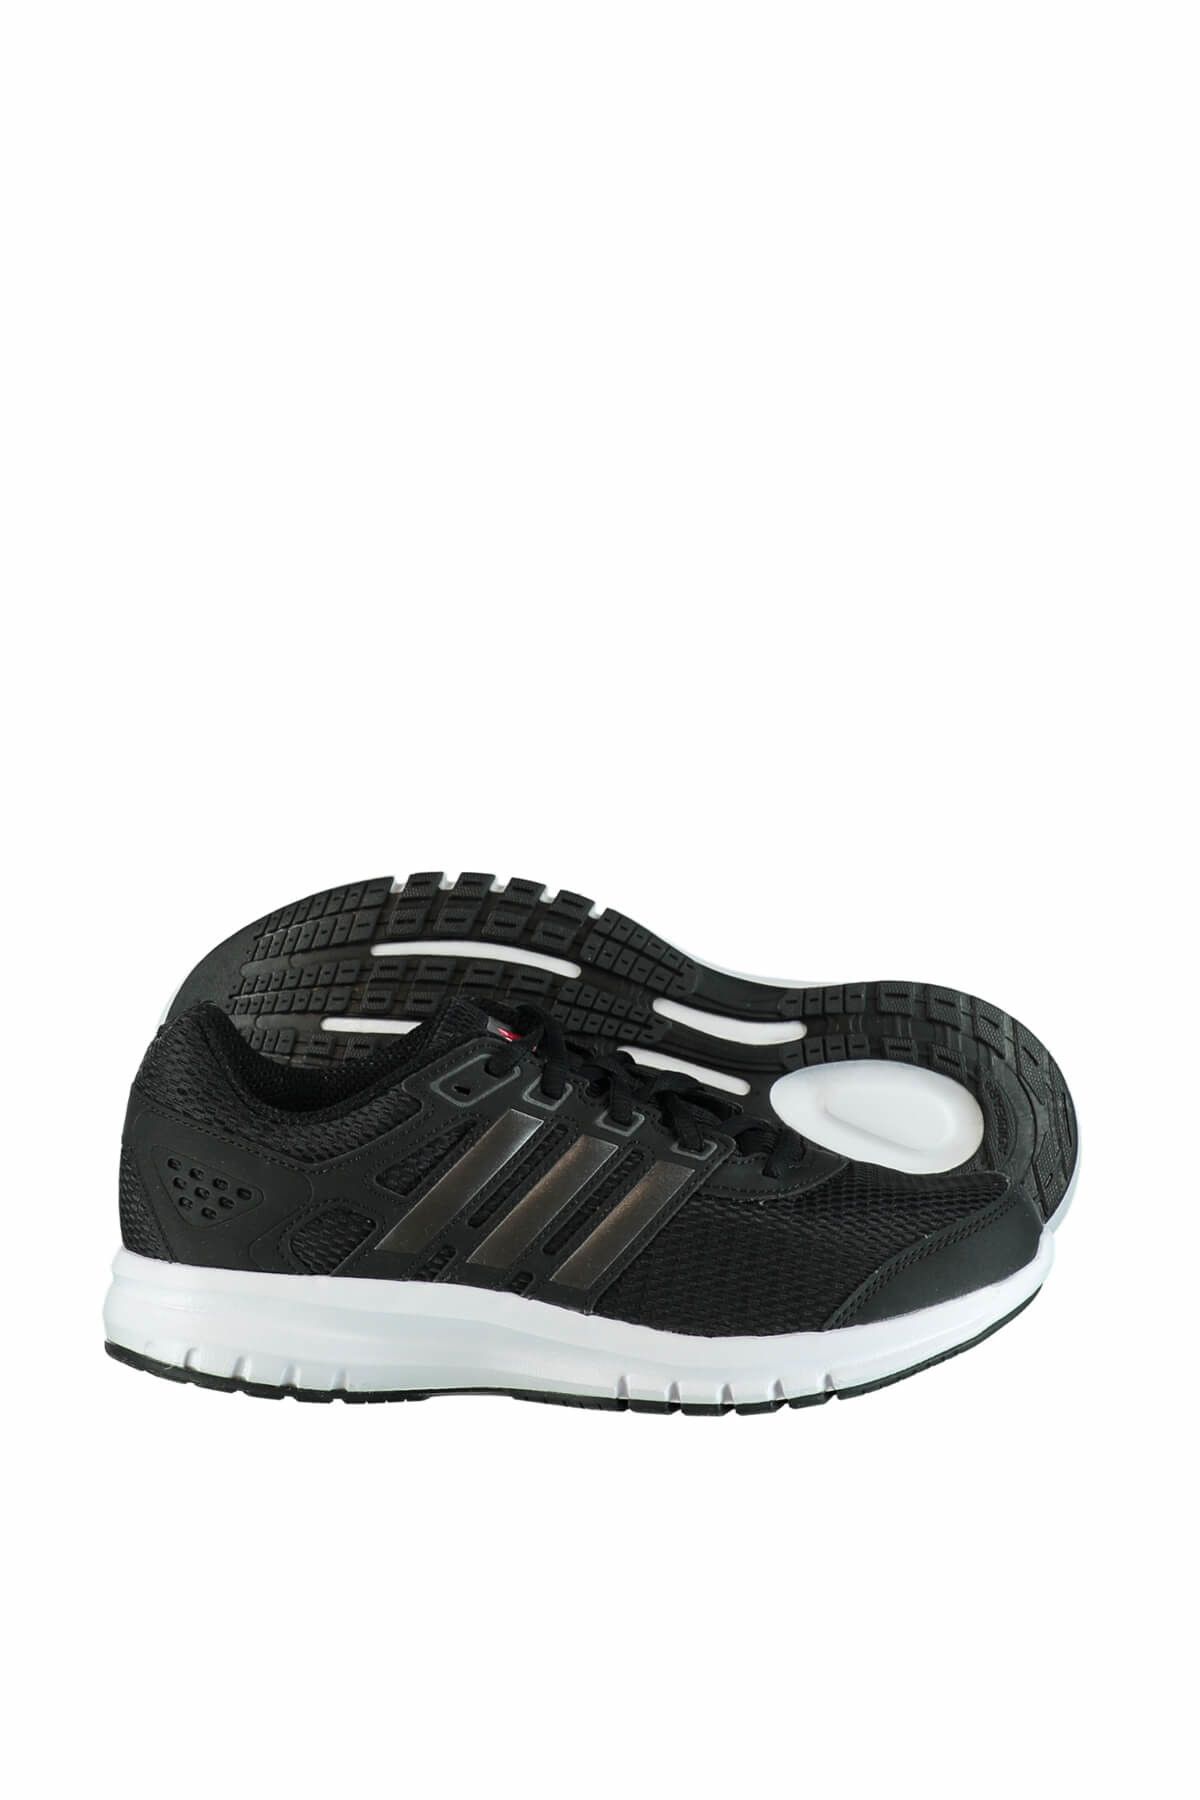 adidas Unisex Siyah Koşu Ve Yürüyüş Ayakkabısı Ba8106 Duramo Lıte